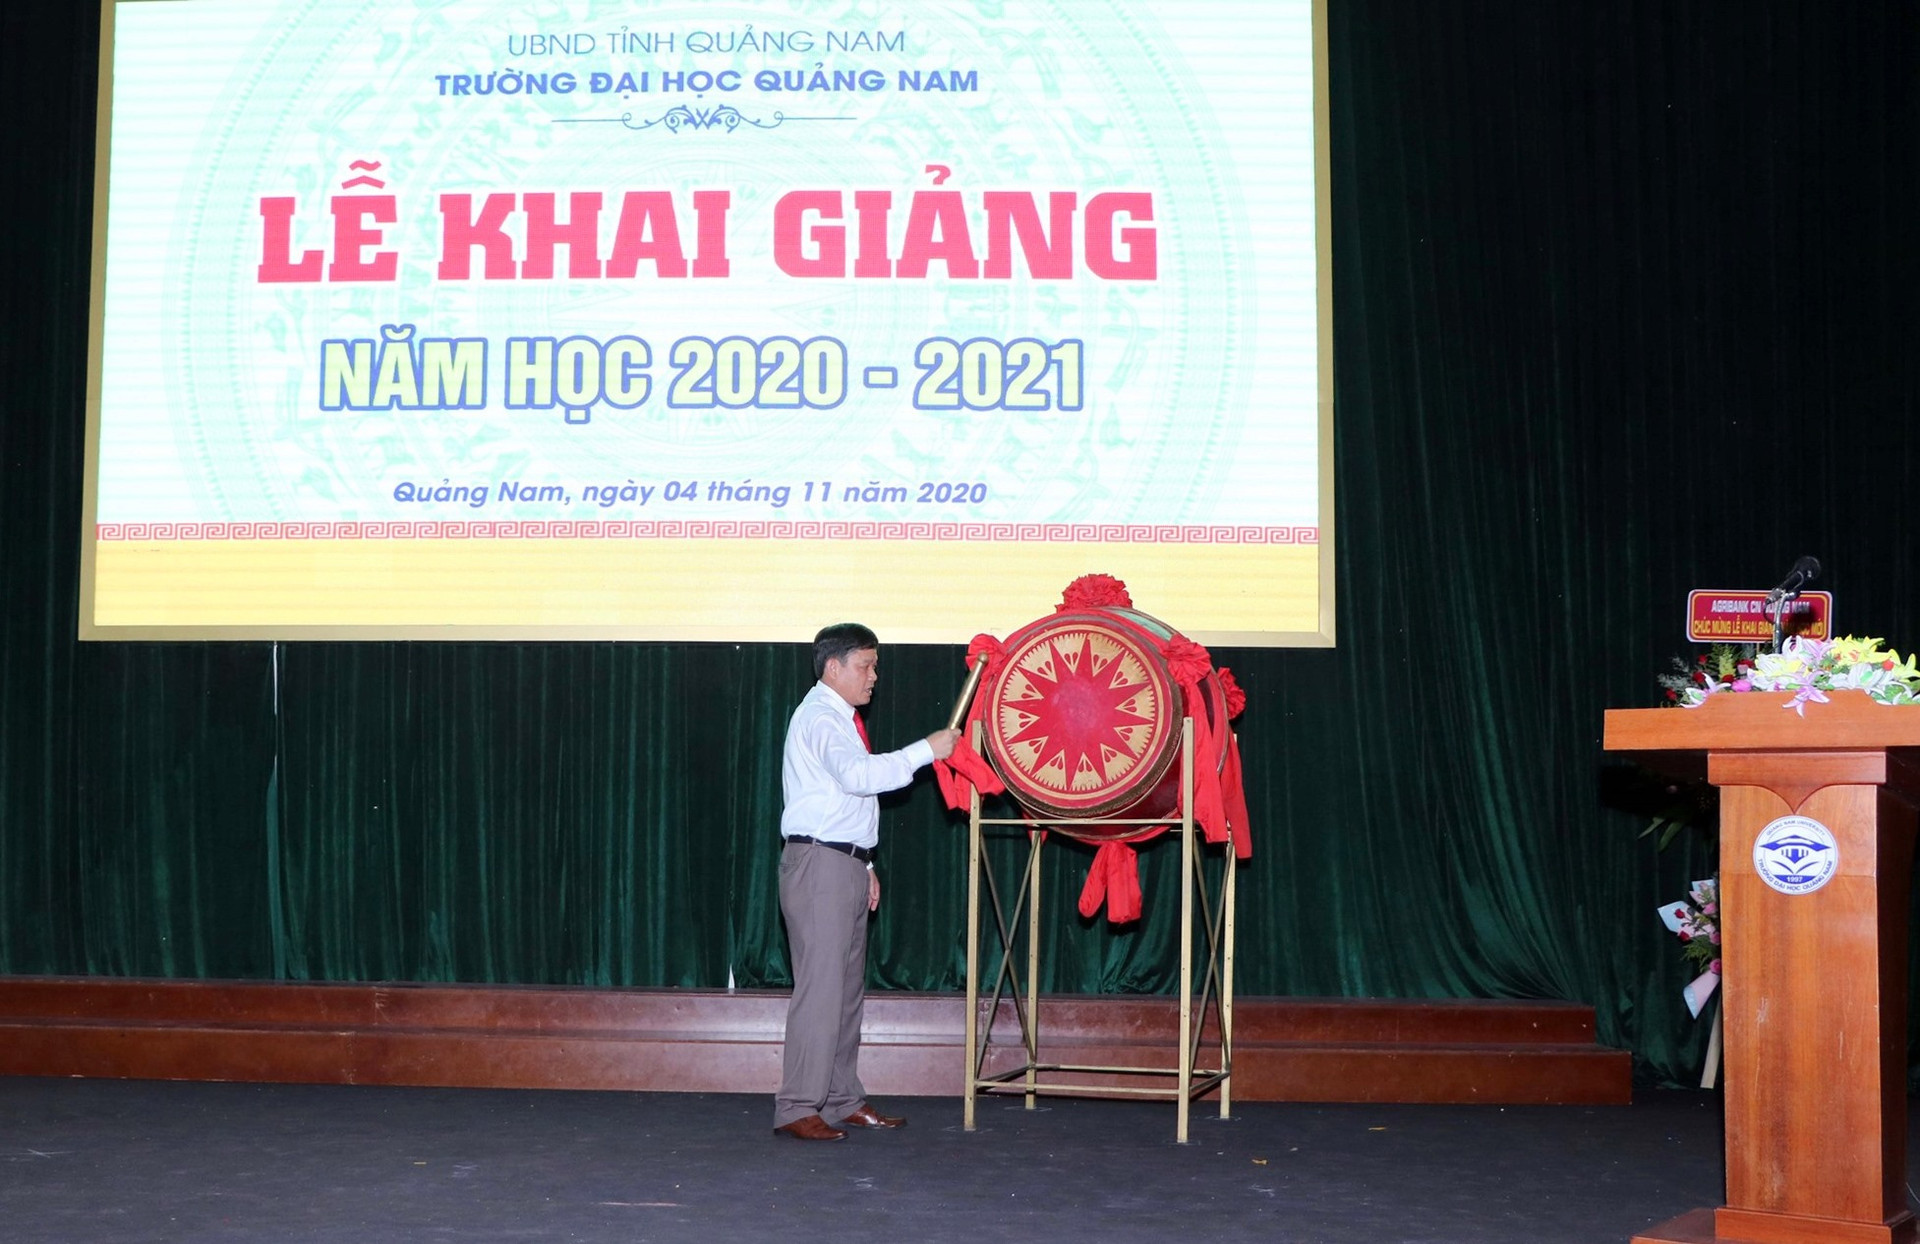 PGS-TS. Huỳnh Trọng Dương - Hiệu trưởng Trường Đại học Quảng Nam đánh trống khai giảng năm học 2020 - 2021. Ảnh: CHÂU HÙNG